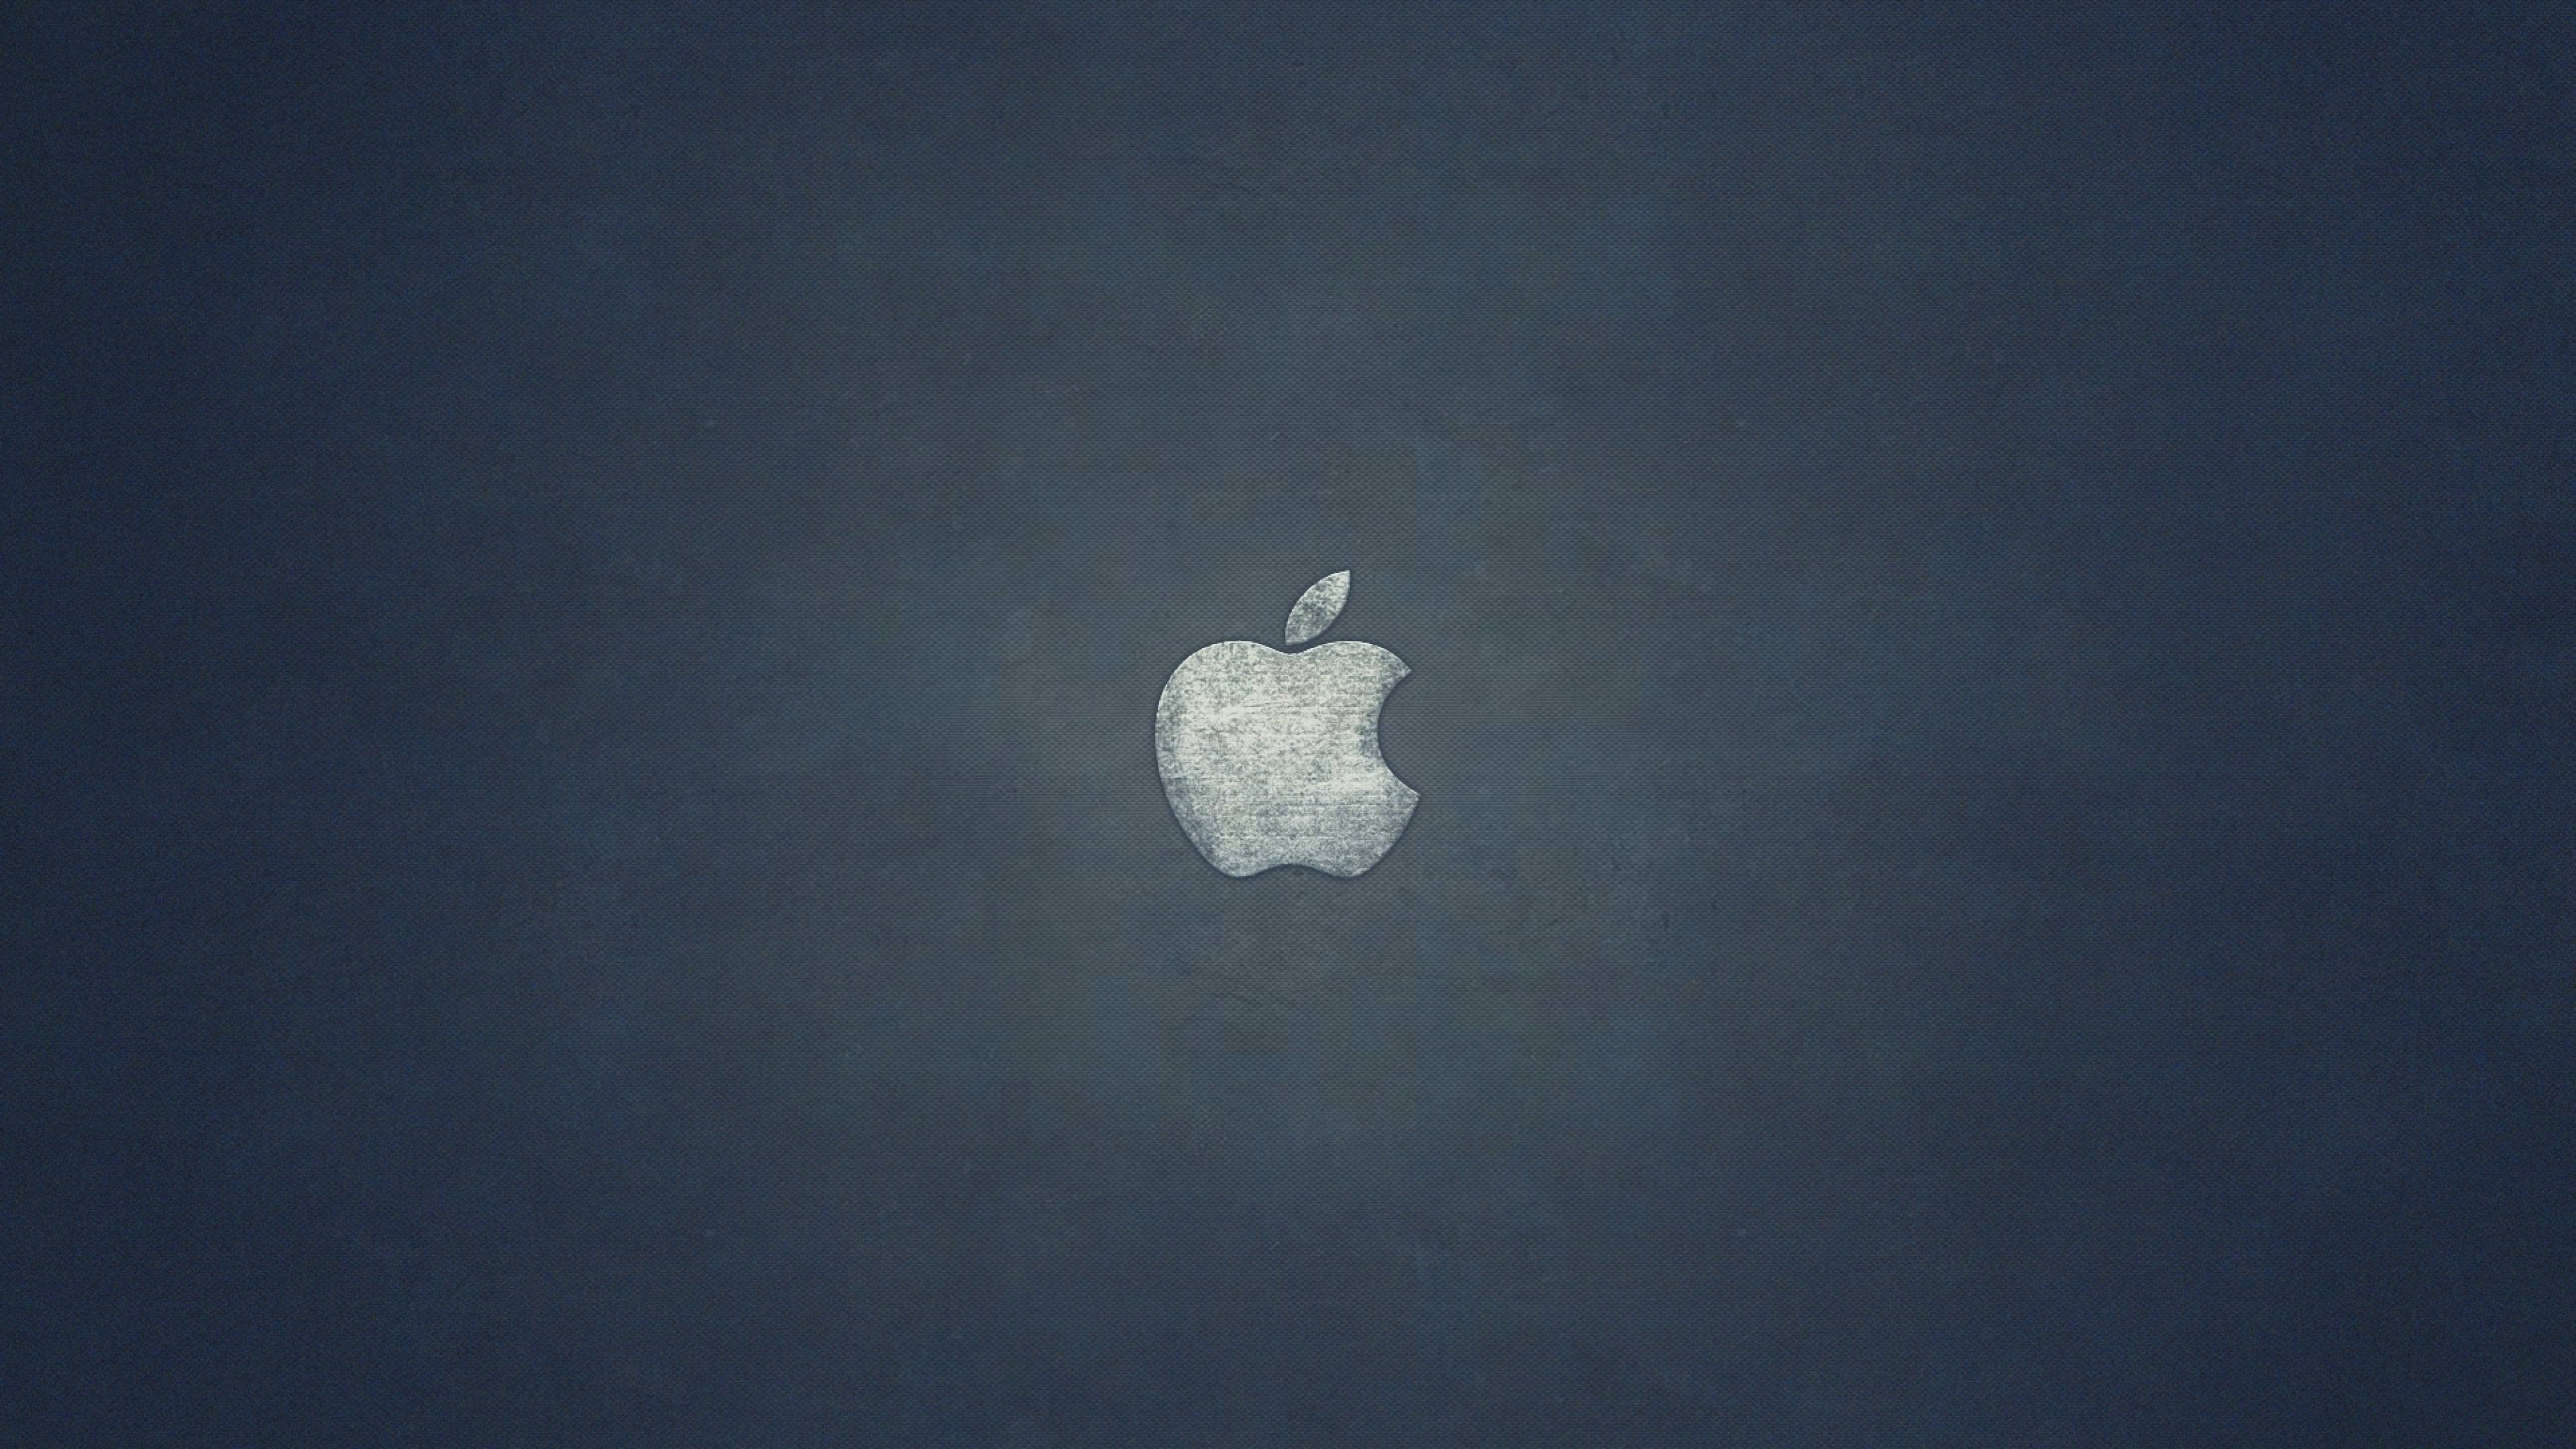 Apple iPhone XR Wallpapers - Top Những Hình Ảnh Đẹp